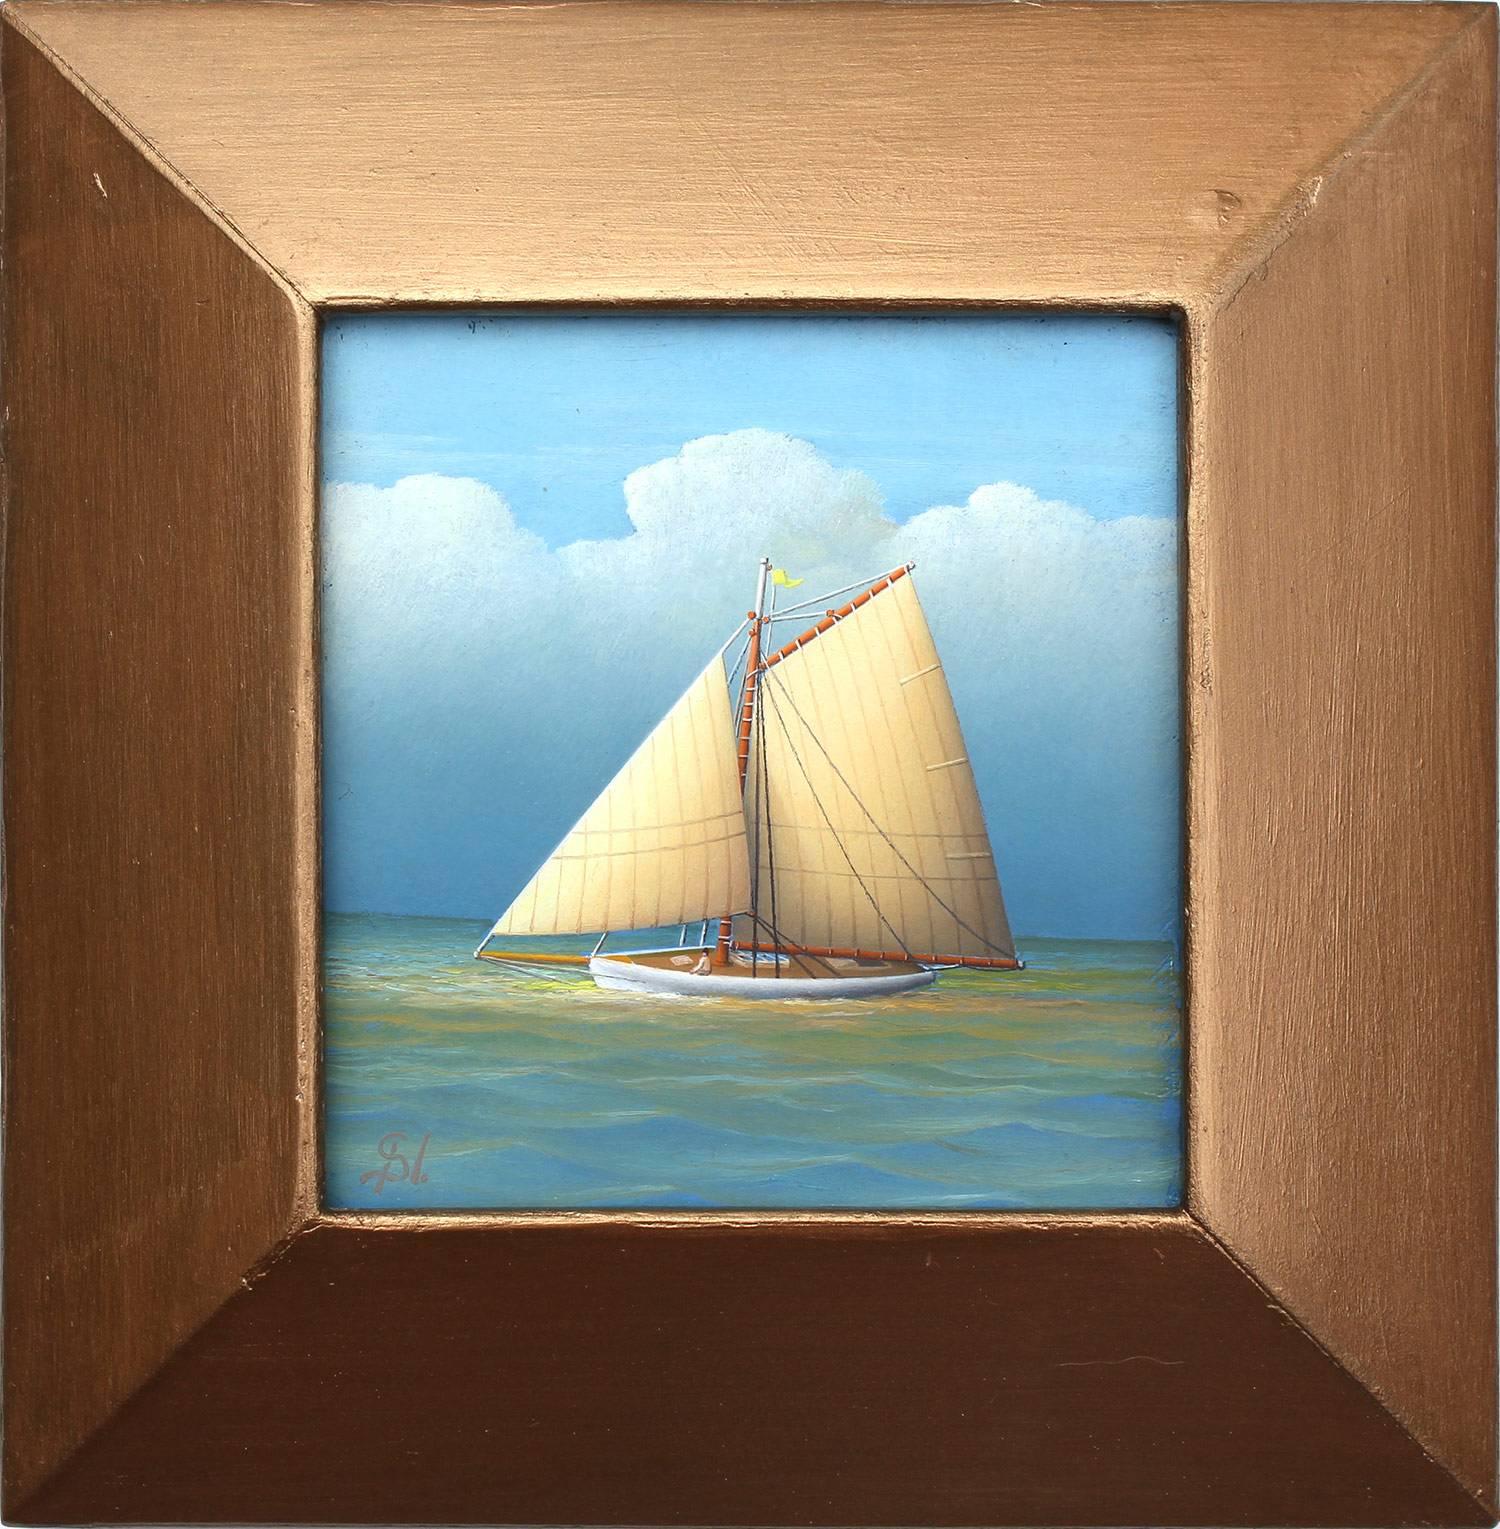 Realistisches Ölgemälde „Segeln in der Dämmerung“ auf Leinwand mit Segelboot in offenem Meer, Realismus